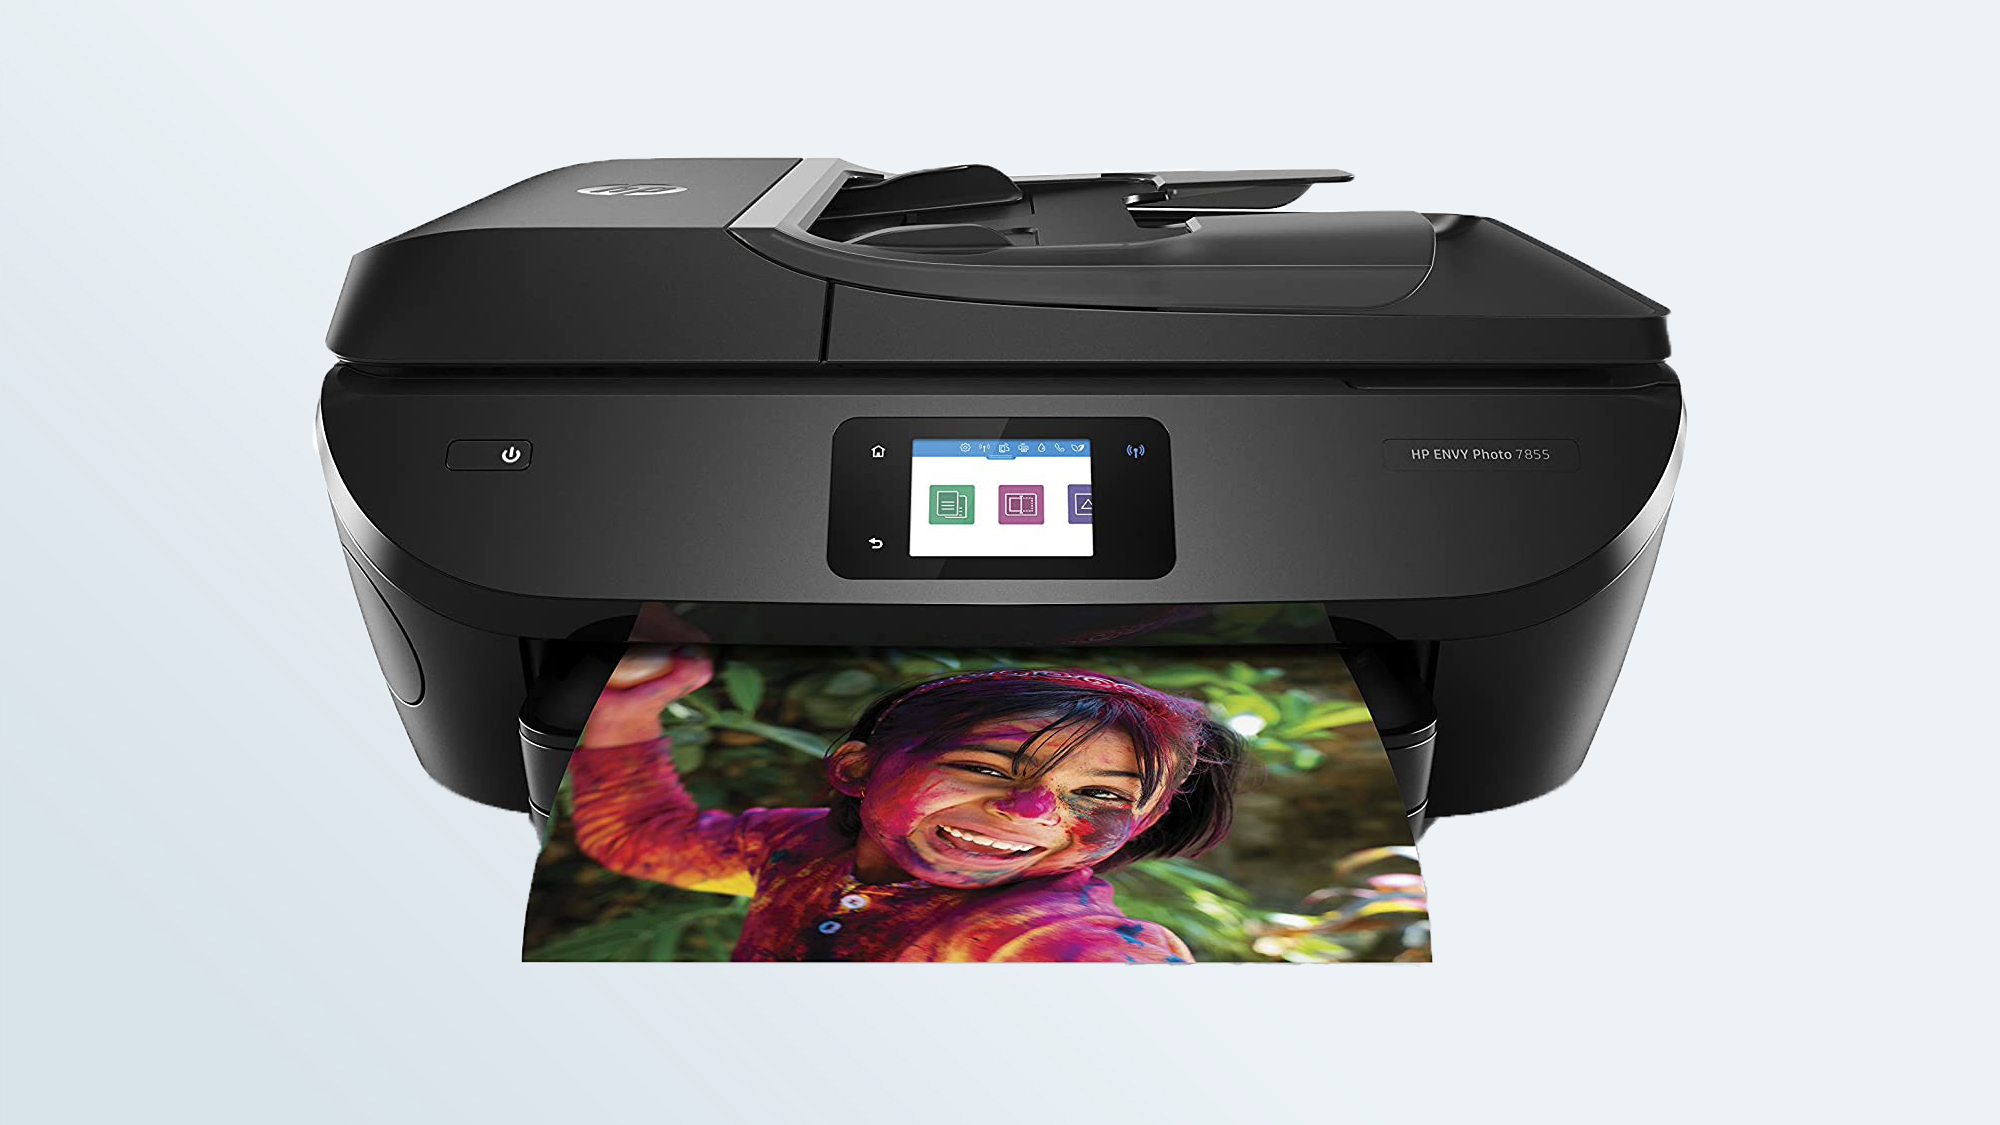 HP Envy 7855 inkjet printer